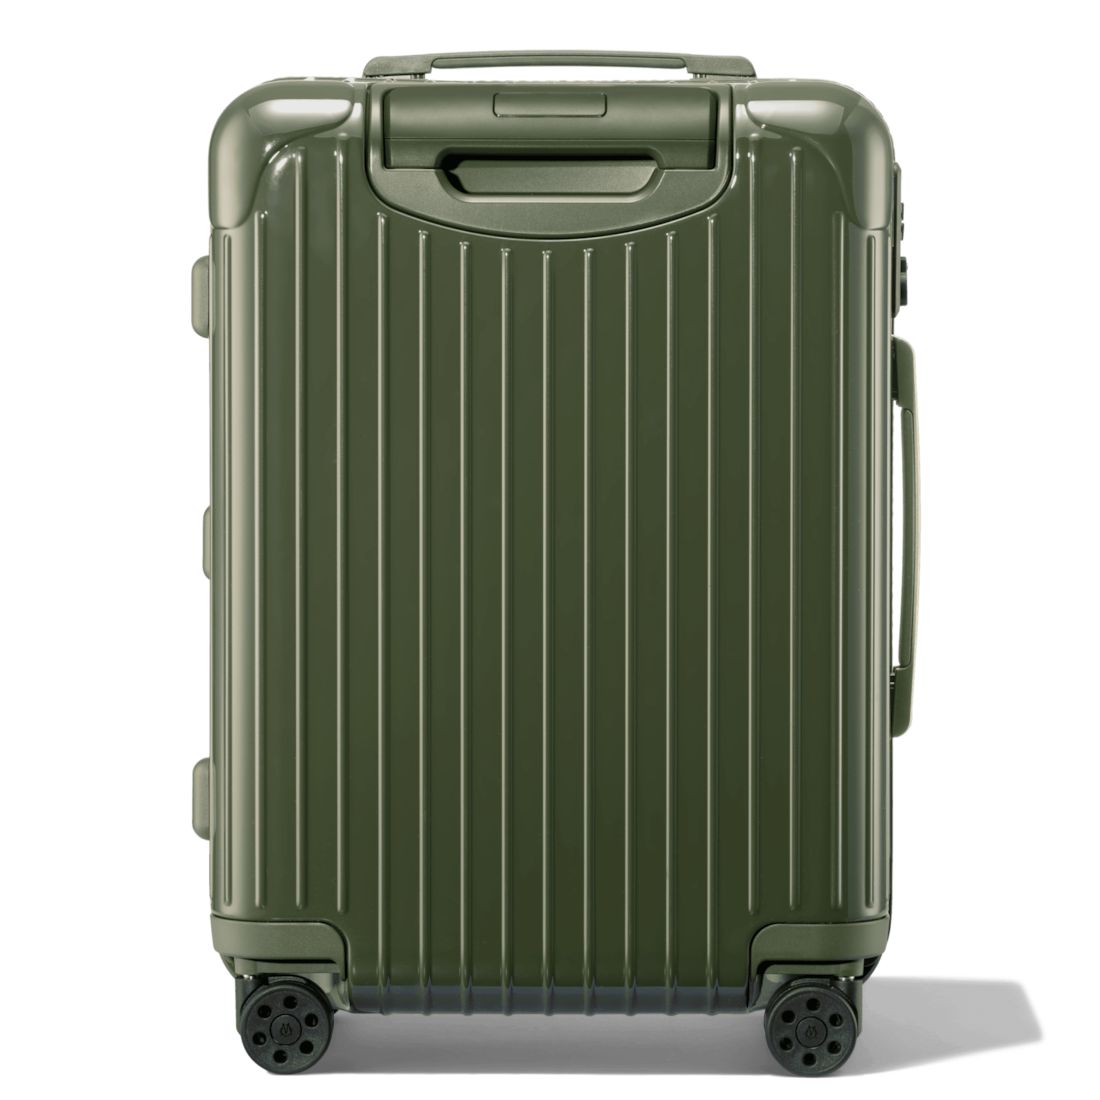 rimowa cabin luggage weight